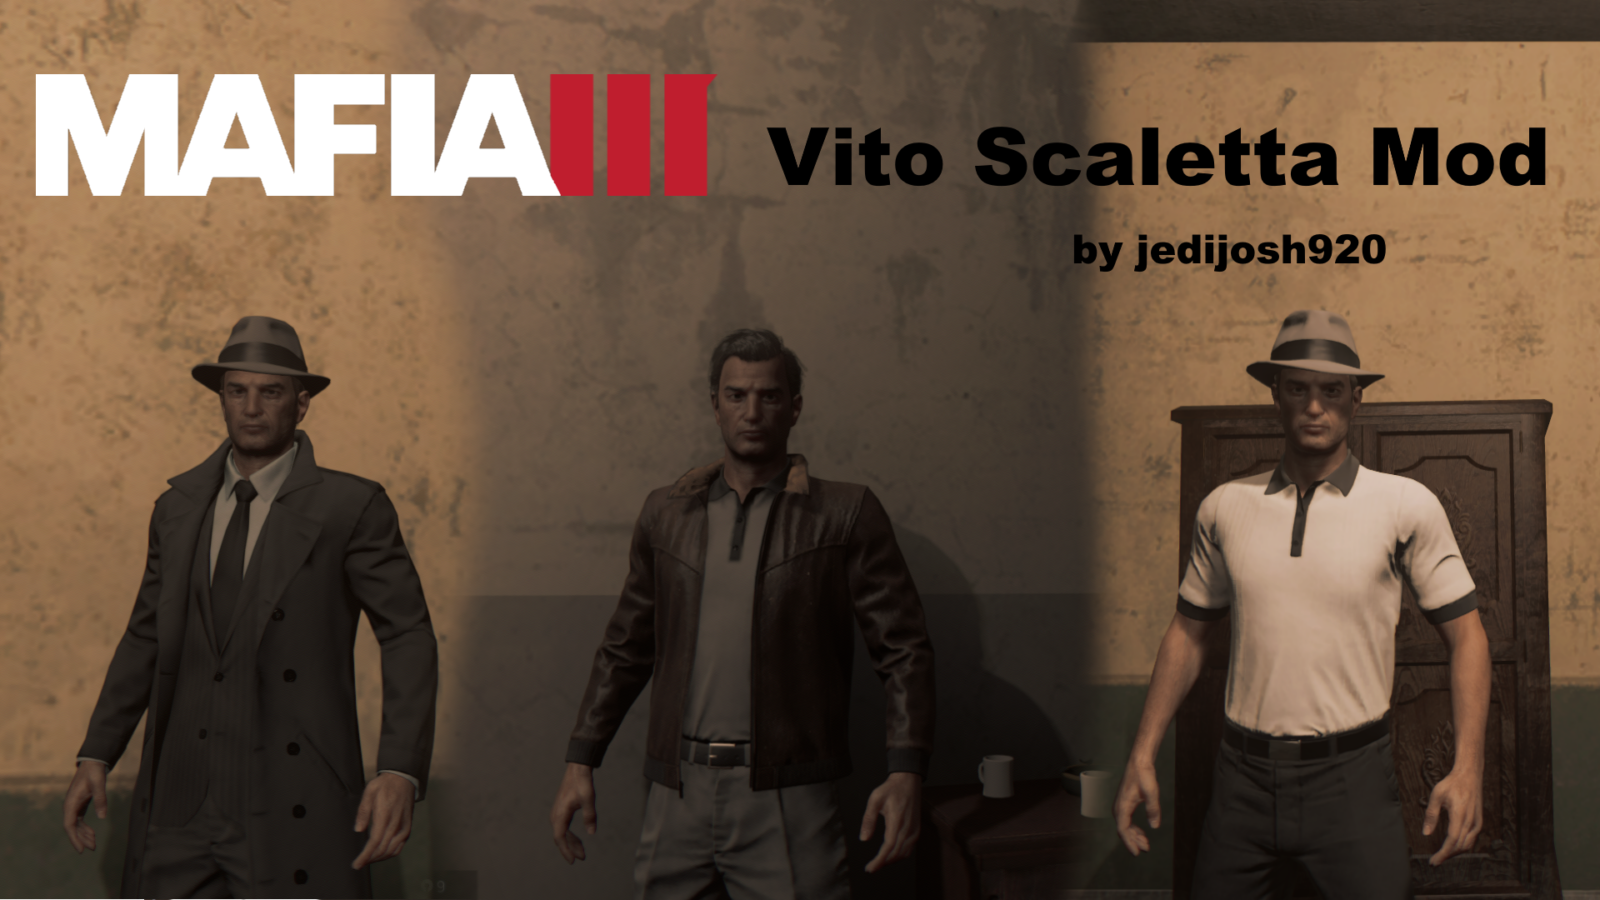 Buy Mafia 2 Definitive Edition, Vito Scaletta